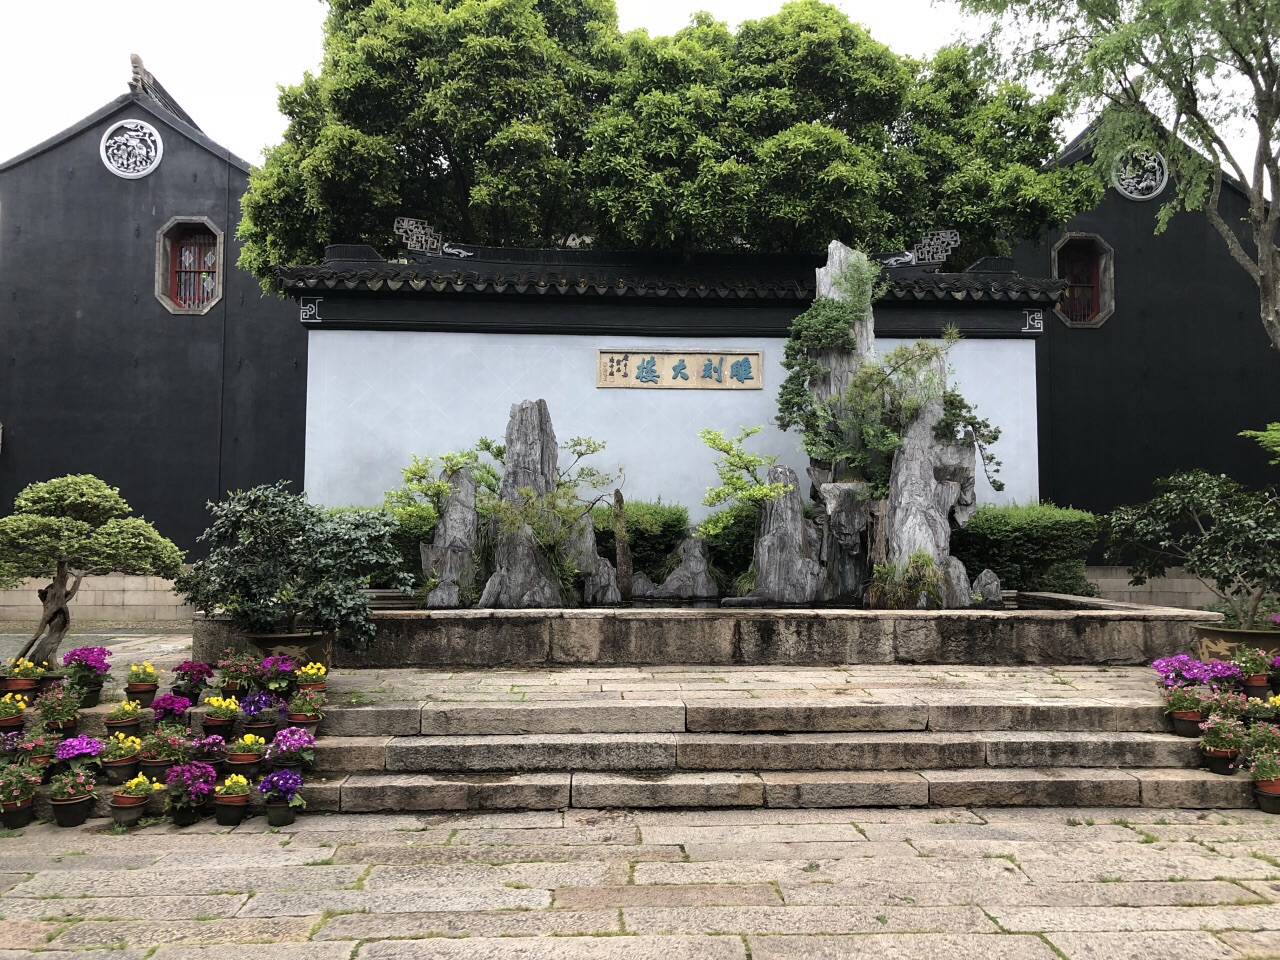 【携程攻略】苏州东山雕花楼景点,因为看了电视里介绍东山雕花楼的节目，就种草了。趁着有假期就去了。…